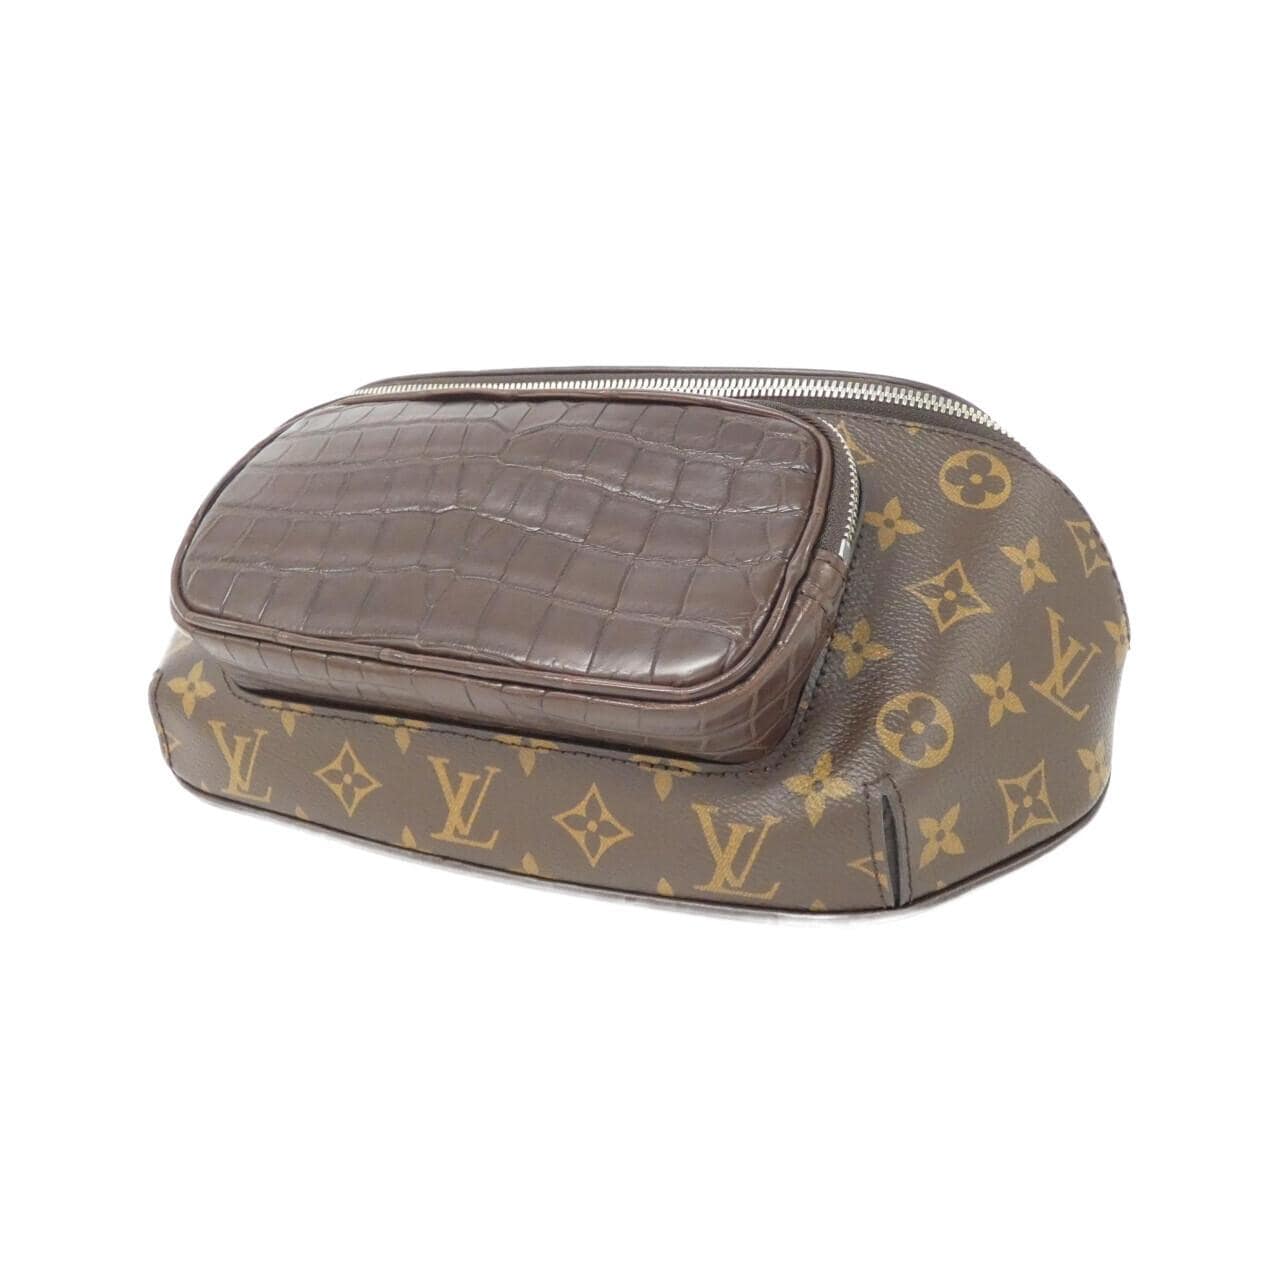 LOUIS VUITTON Monogram + Exotic Leather Bumbag Body Bag